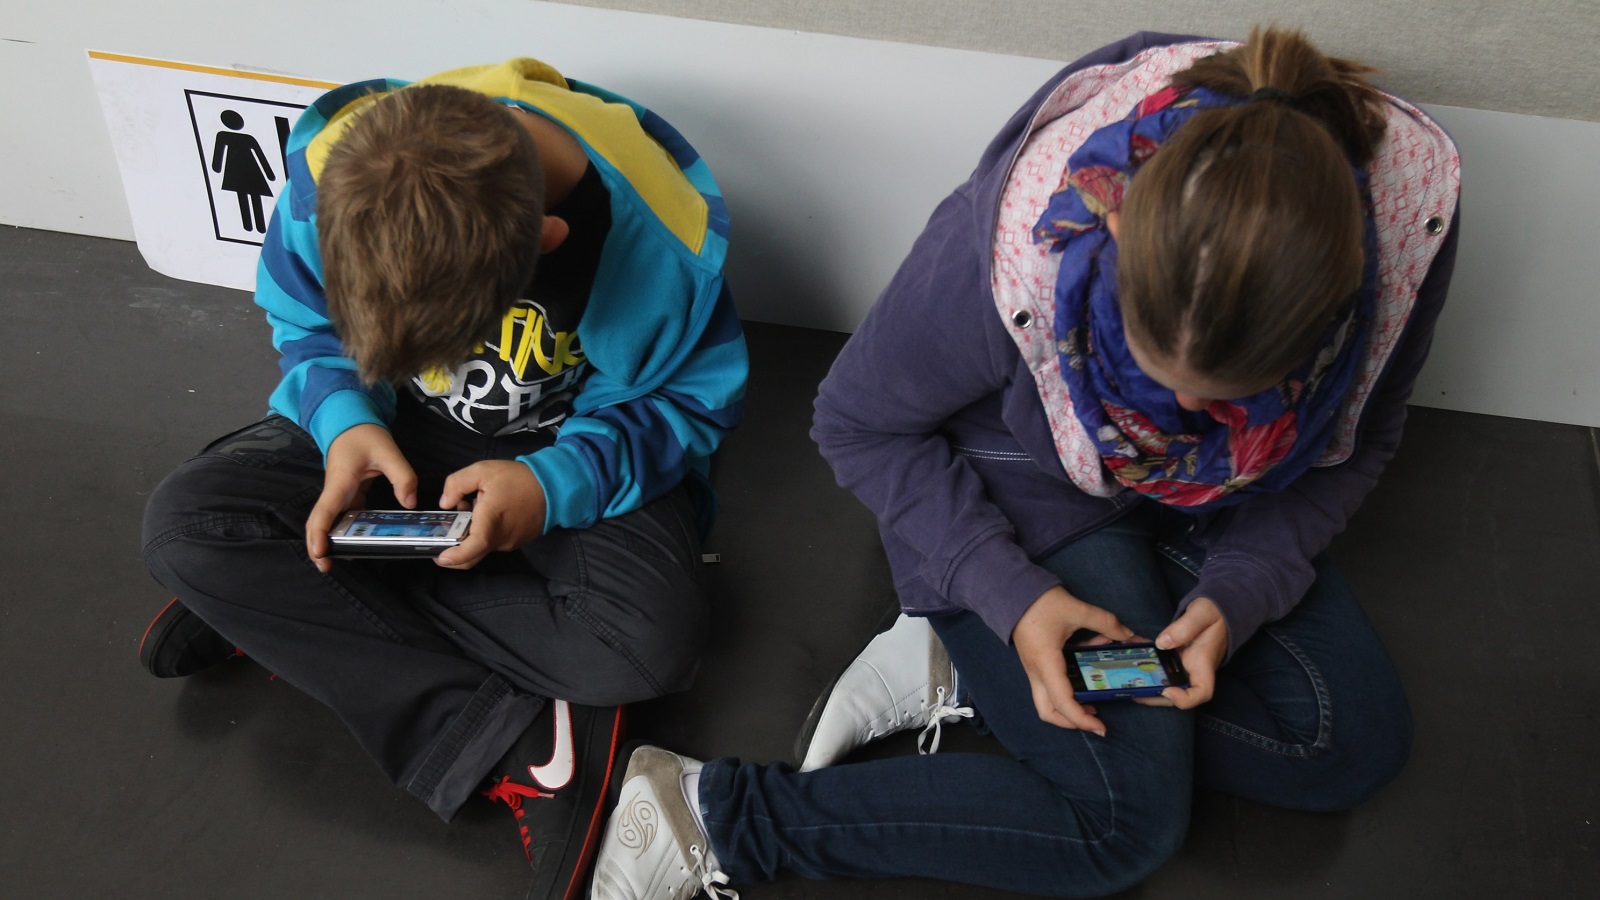 الأطفال يقضون أكثر من تسع ساعات يوميا في مشاهدة المحتوى الرقمي (غيتي)